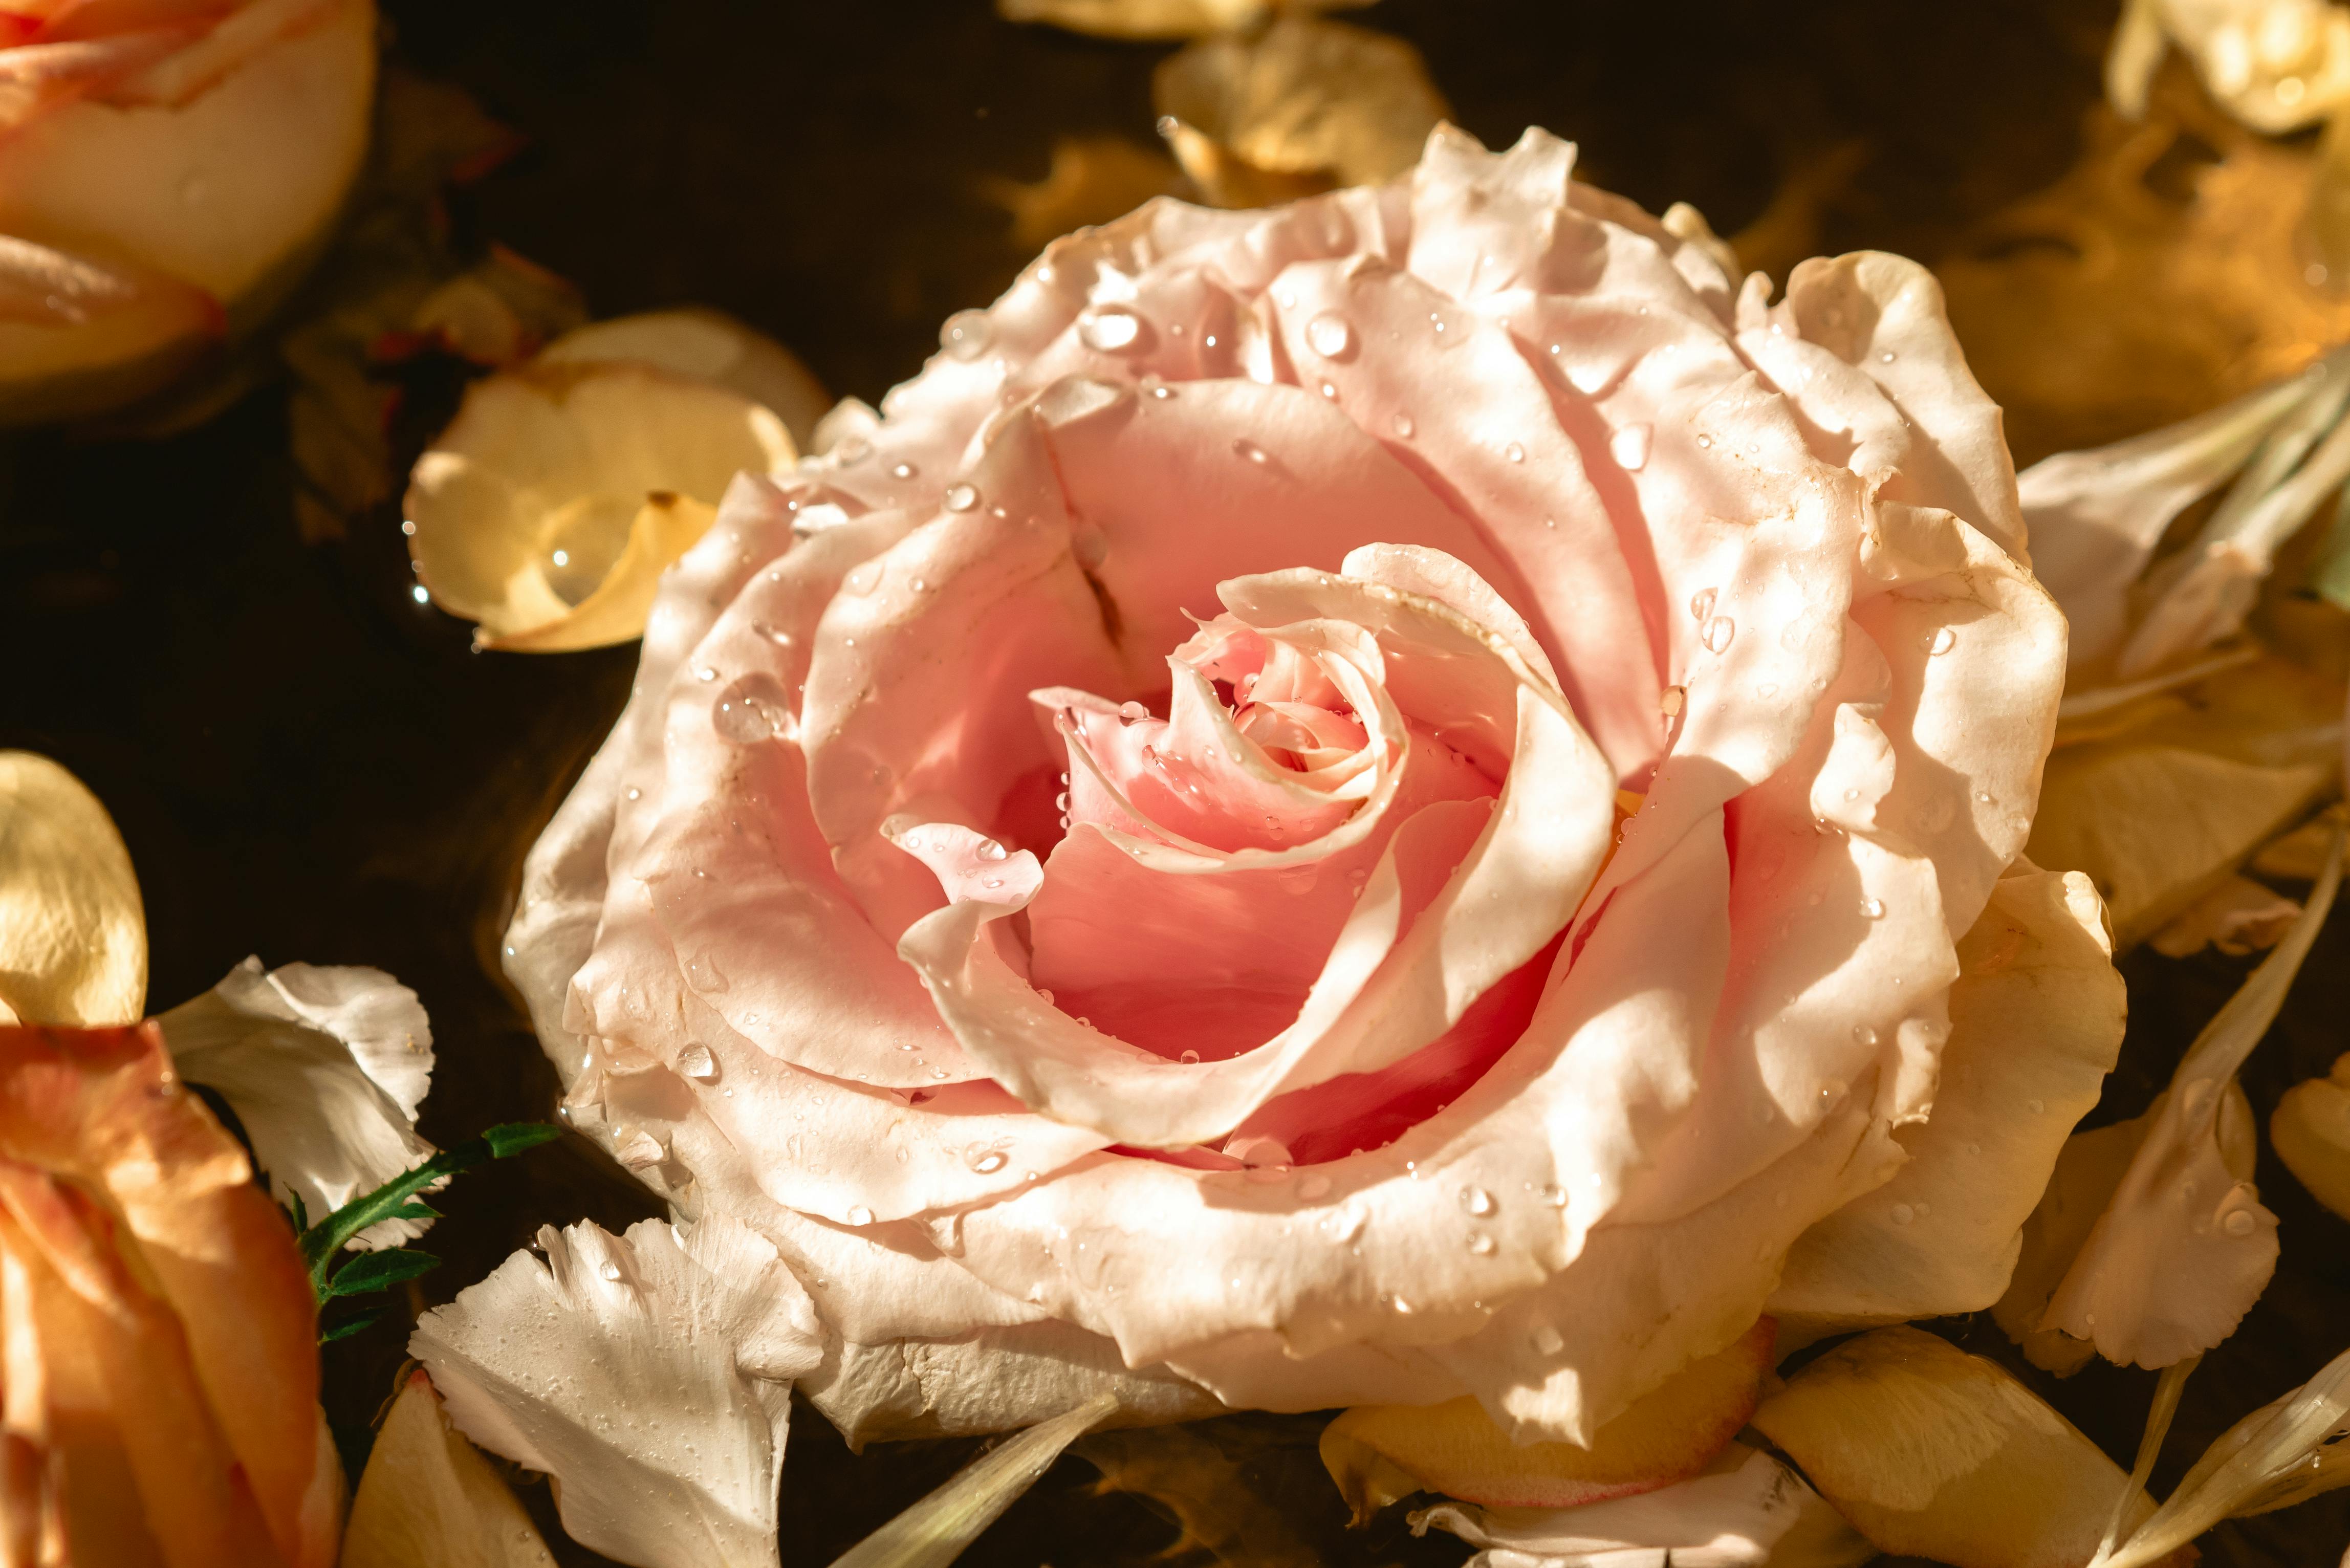 Hoa sen hồng rực rỡ sẽ khiến bạn mê mẩn với sự thanh thoát và đầy nghệ thuật của chúng. Hãy thưởng thức những hình ảnh tuyệt đẹp này và cảm nhận sự thanh tao, tươi mới và bình yên từ những cánh sen.